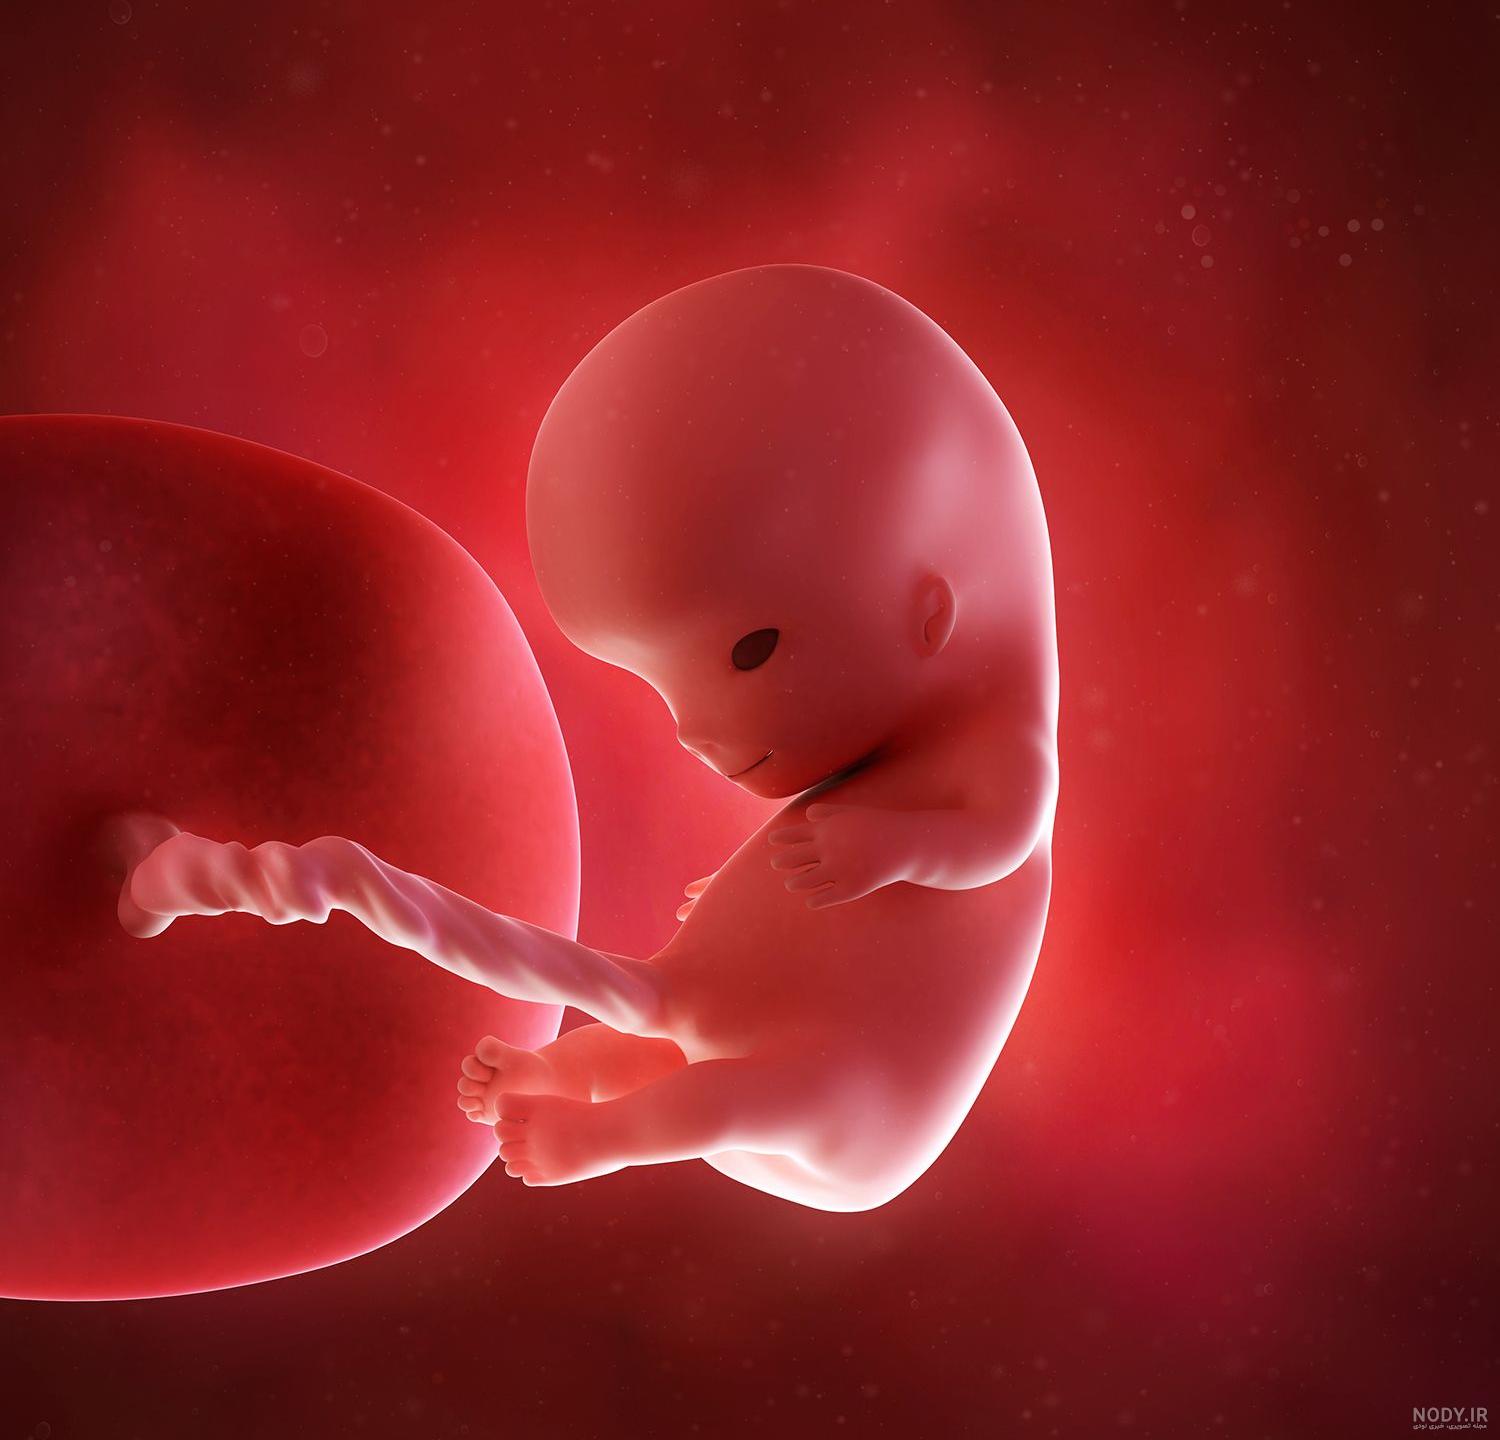 اندازه جنین دو ماهه | تشخیص جنسیت جنین در ماه دوم بارداری